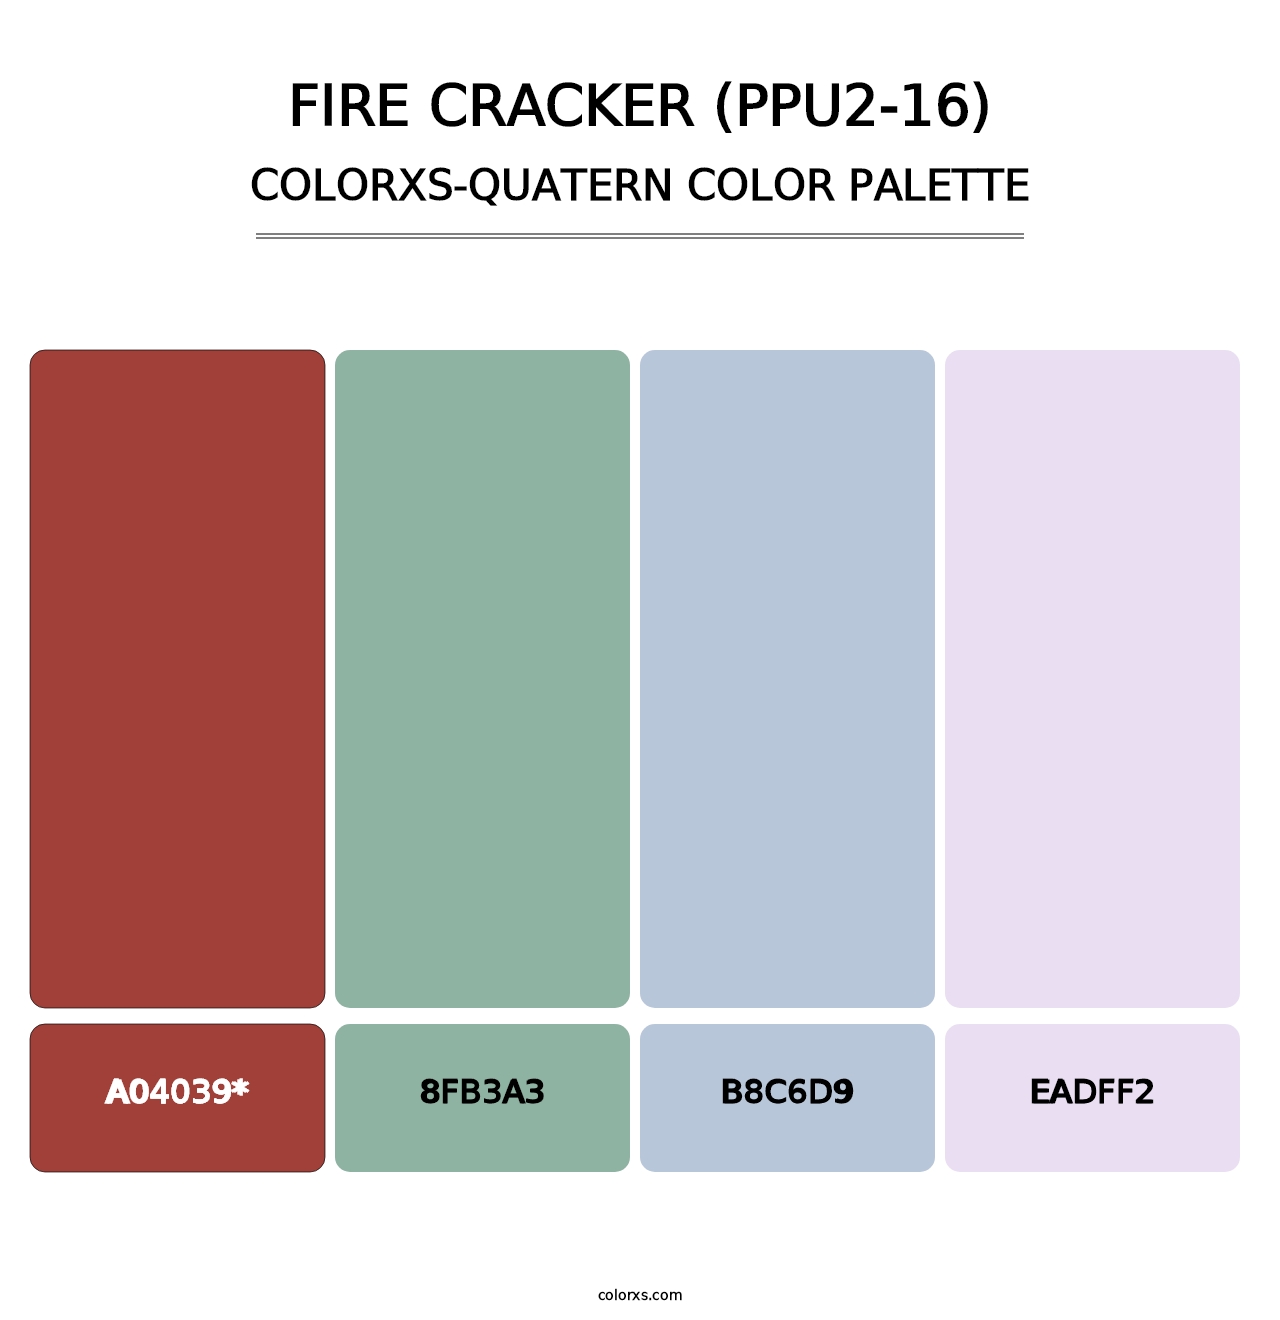 Fire Cracker (PPU2-16) - Colorxs Quatern Palette